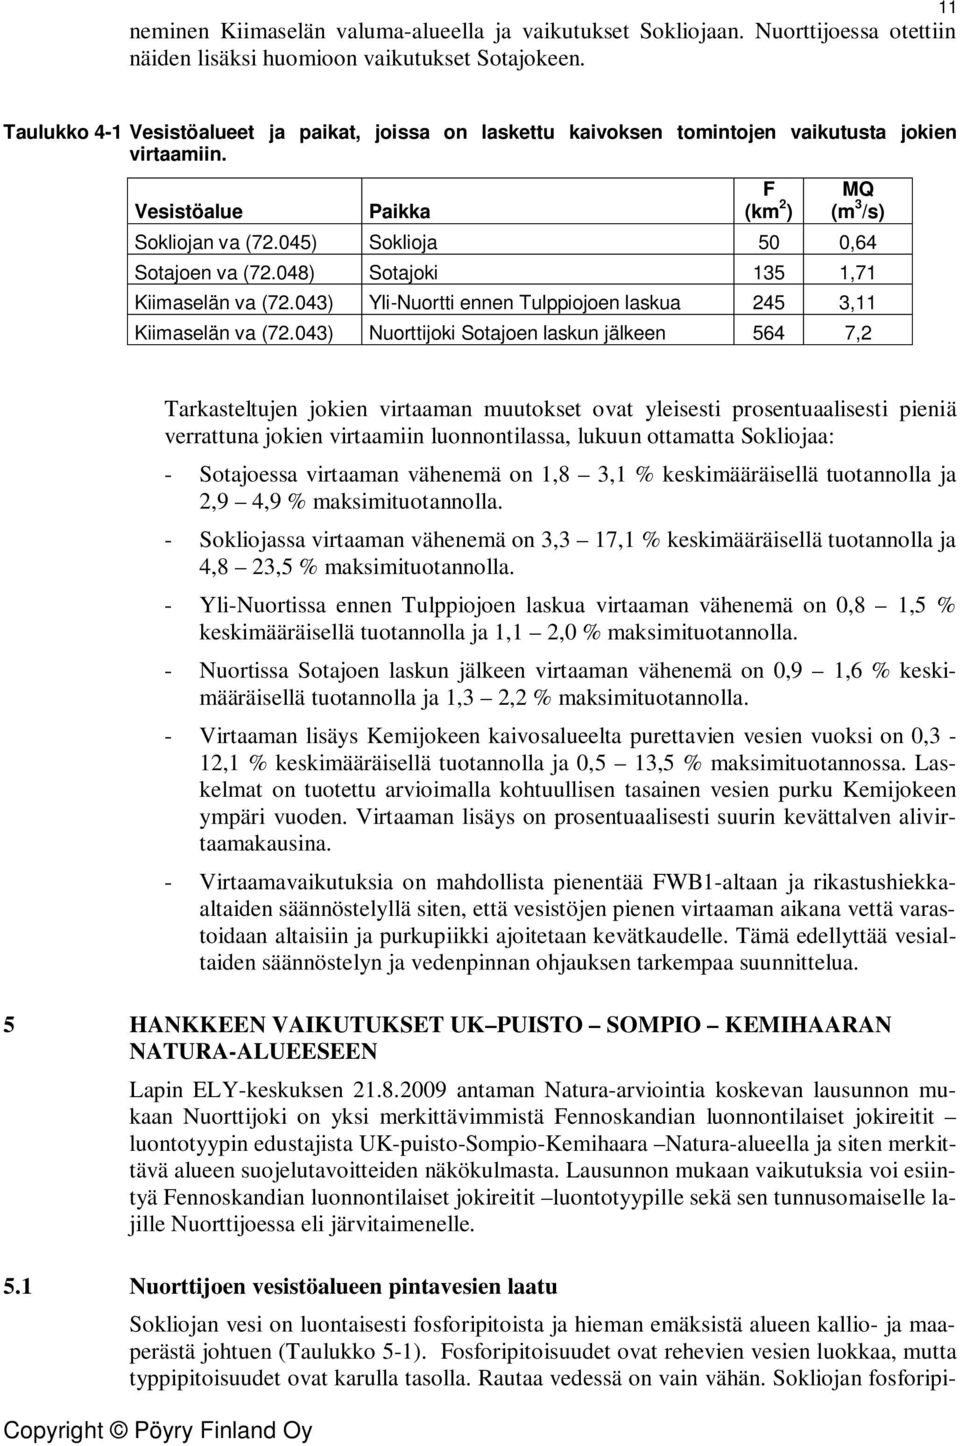 045) Soklioja 50 0,64 Sotajoen va (72.048) Sotajoki 135 1,71 Kiimaselän va (72.043) Yli-Nuortti ennen Tulppiojoen laskua 245 3,11 Kiimaselän va (72.